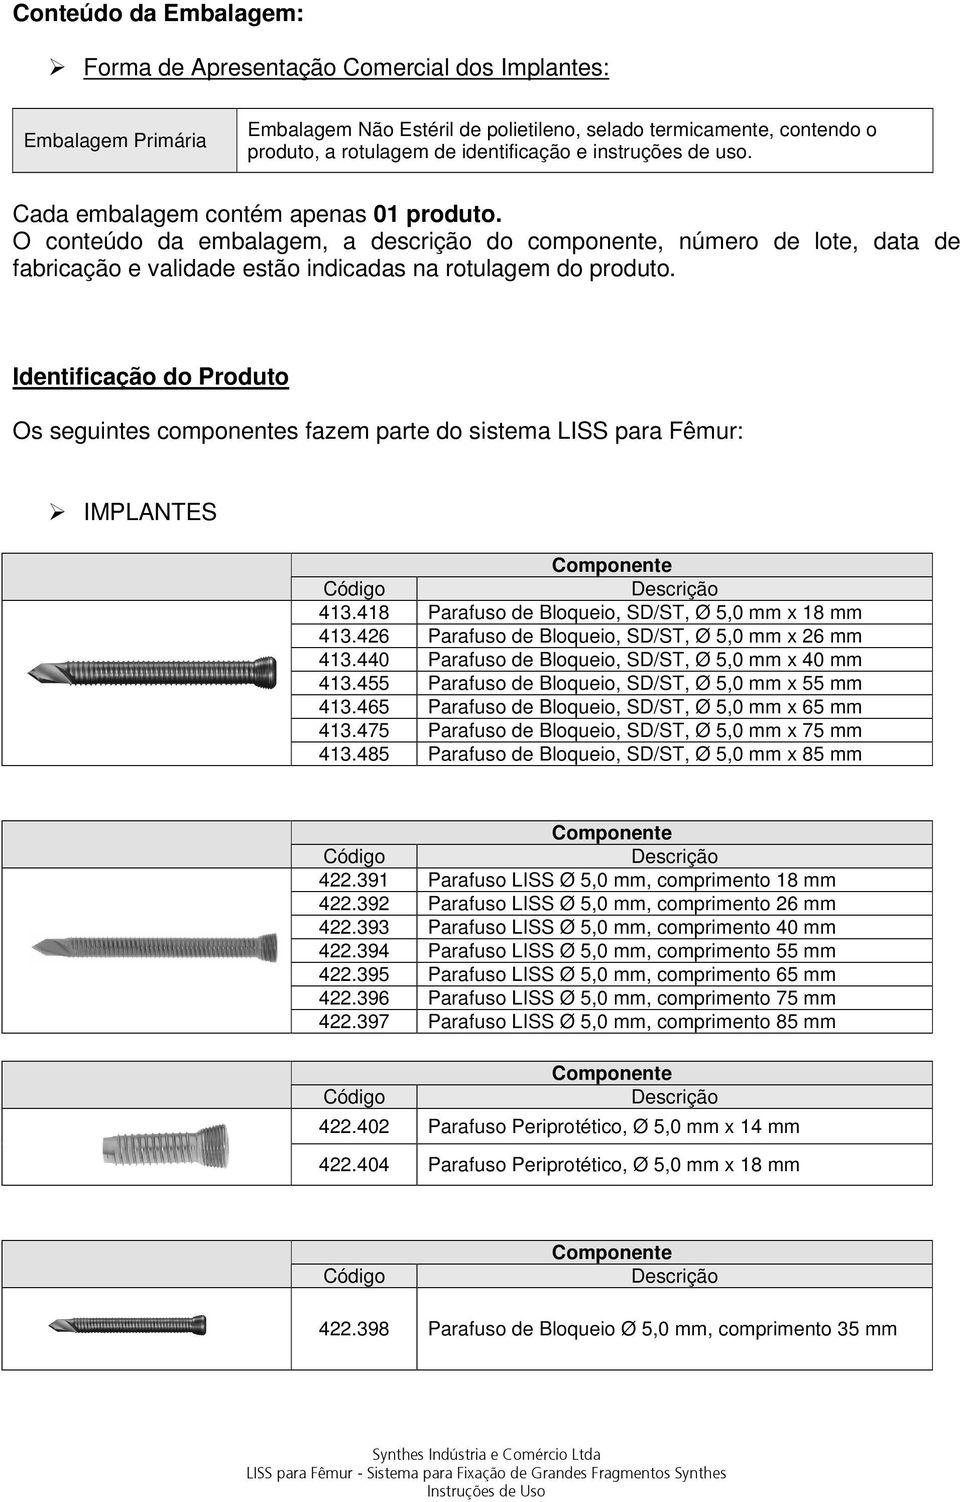 Identificação do Produto Os seguintes componentes fazem parte do sistema LISS para Fêmur: IMPLANTES 413.418 Parafuso de Bloqueio, SD/ST, Ø 5,0 mm x 18 mm 413.